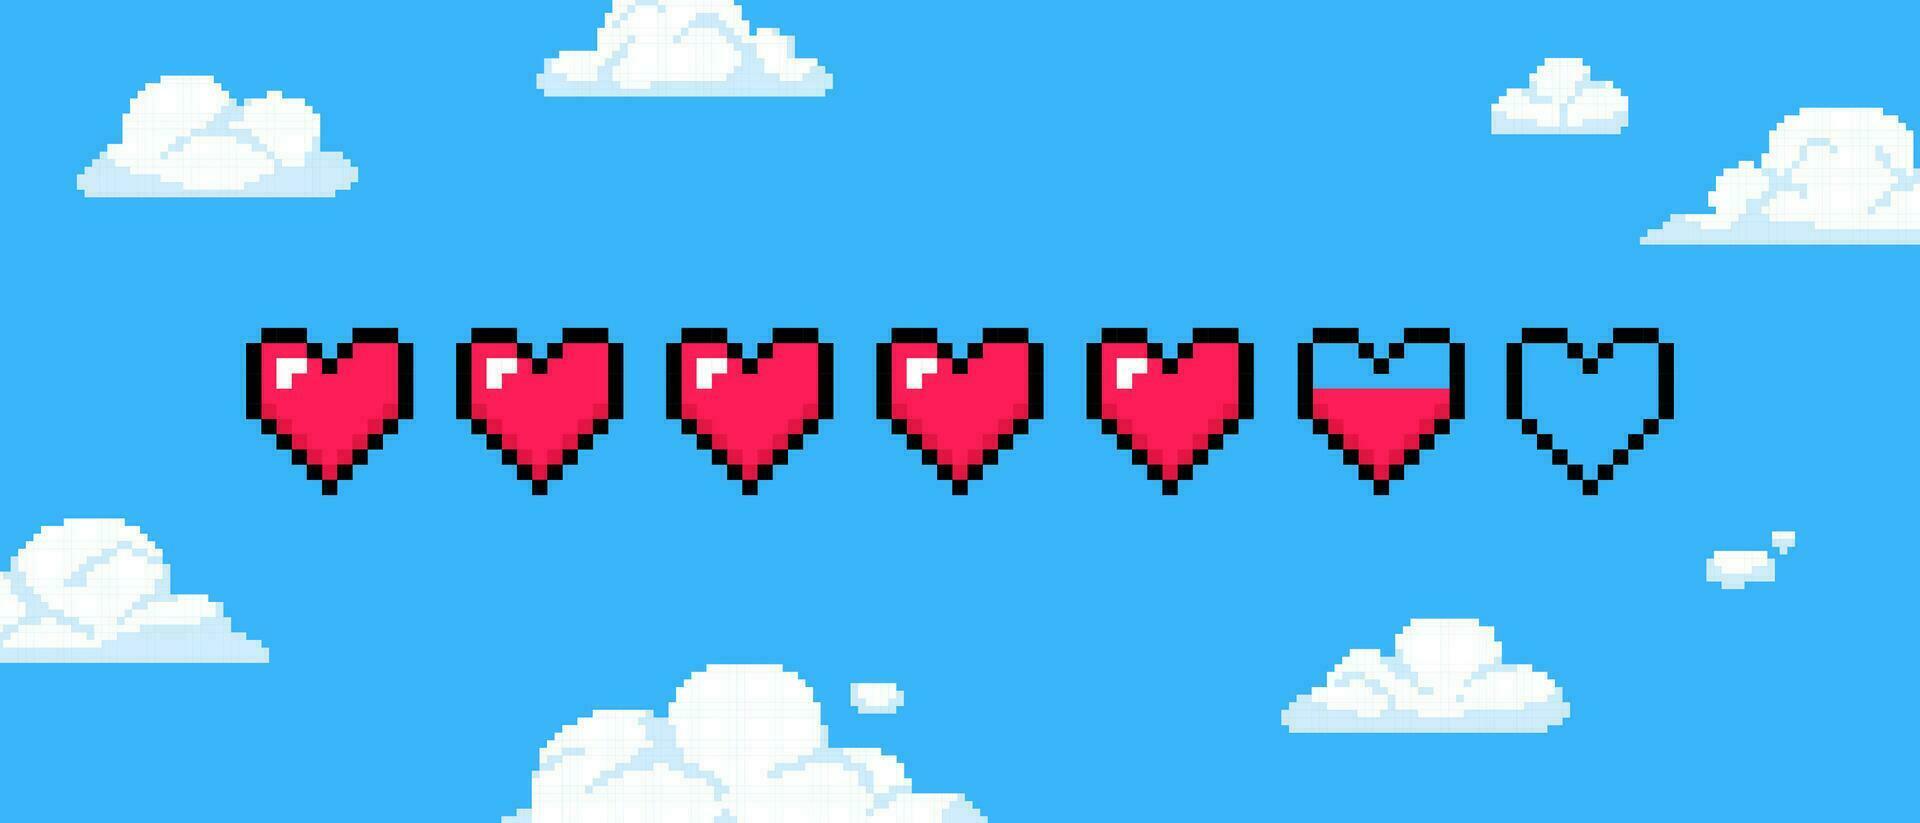 pixel hart spel Gezondheid. 8 beetje leven bar met rood harten, retro jaren 80, 90s gaming koppel Aan blauw lucht met wit pixel wolken achtergrond. vector illustratie